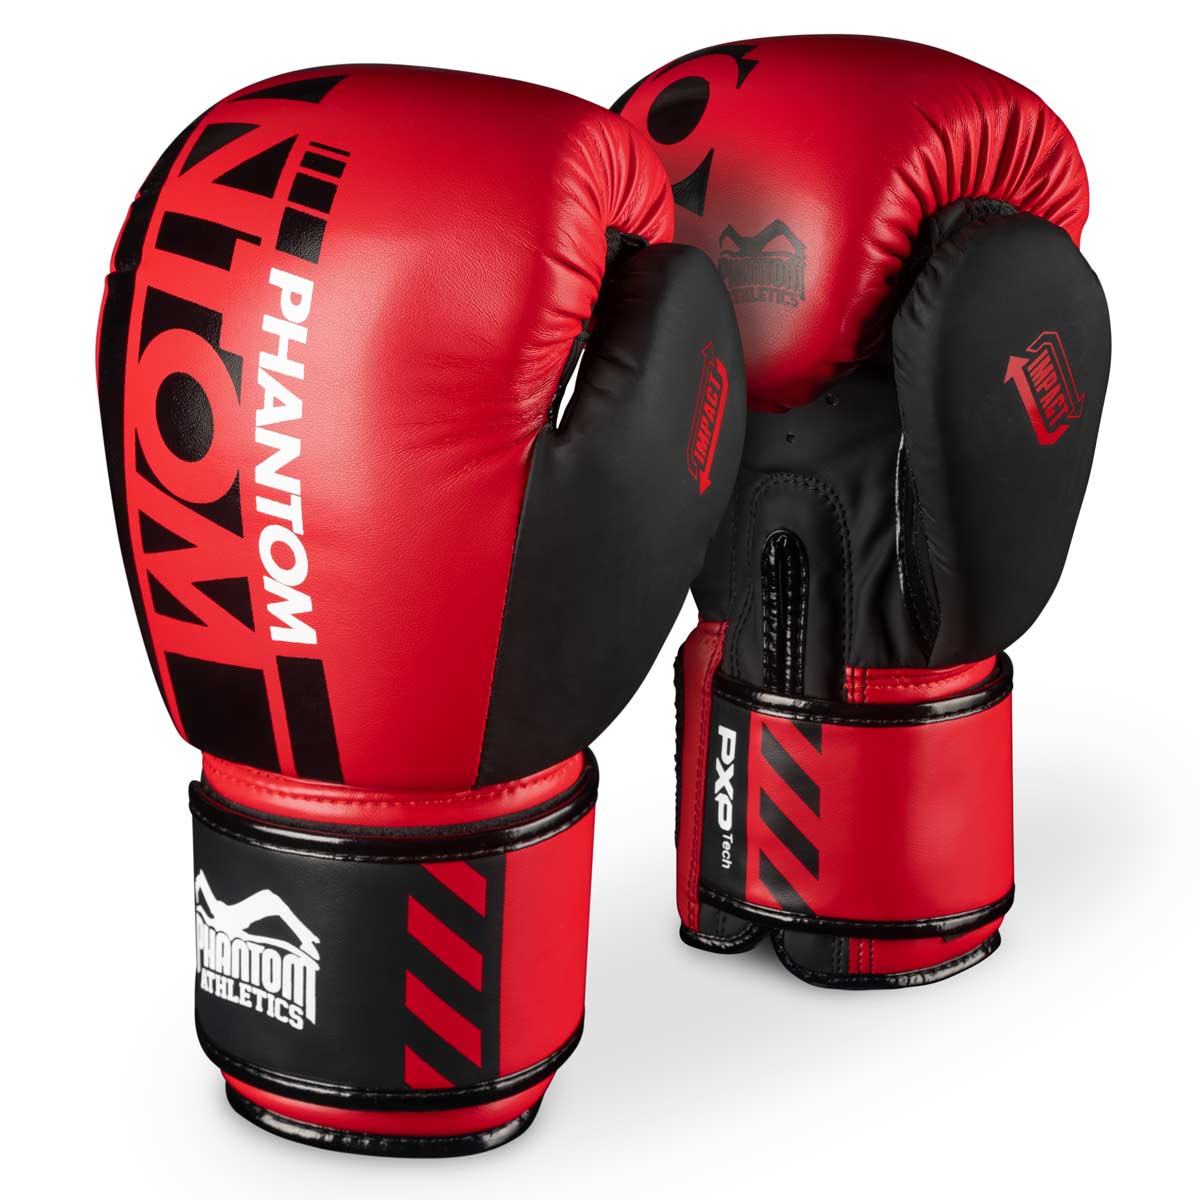 Phantom boxerské rukavice APEX v limitované RED edici. Perfektní rukavice pro váš trénink bojových umění jako je MMA, Muay Thai, thajský box, K1 nebo box.